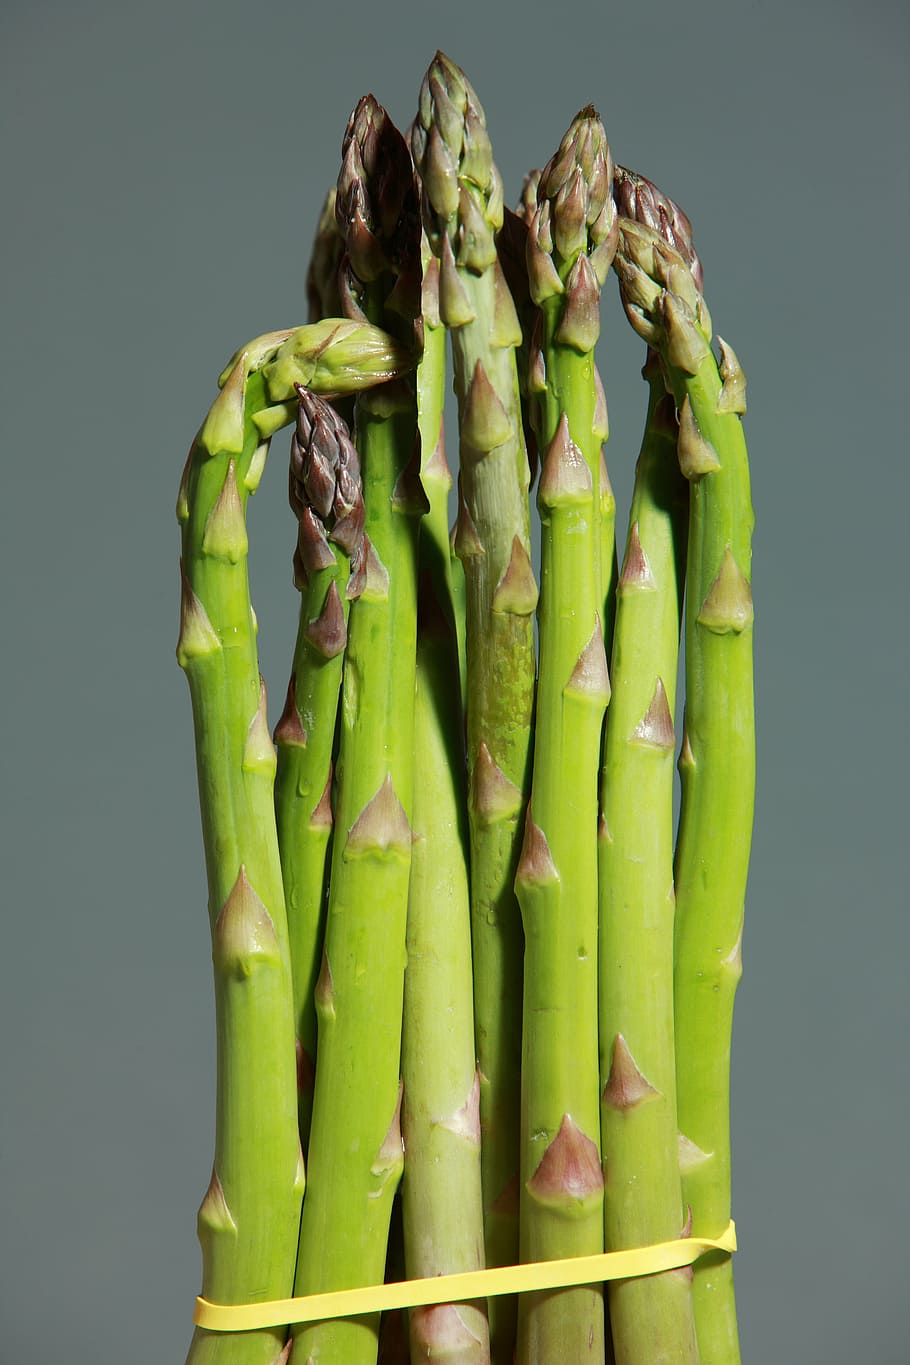 sekelompok asparagus, asparagus hijau, asparagus, hijau, sayuran, makan, sehat, tanaman, pakis asparagus, memasak